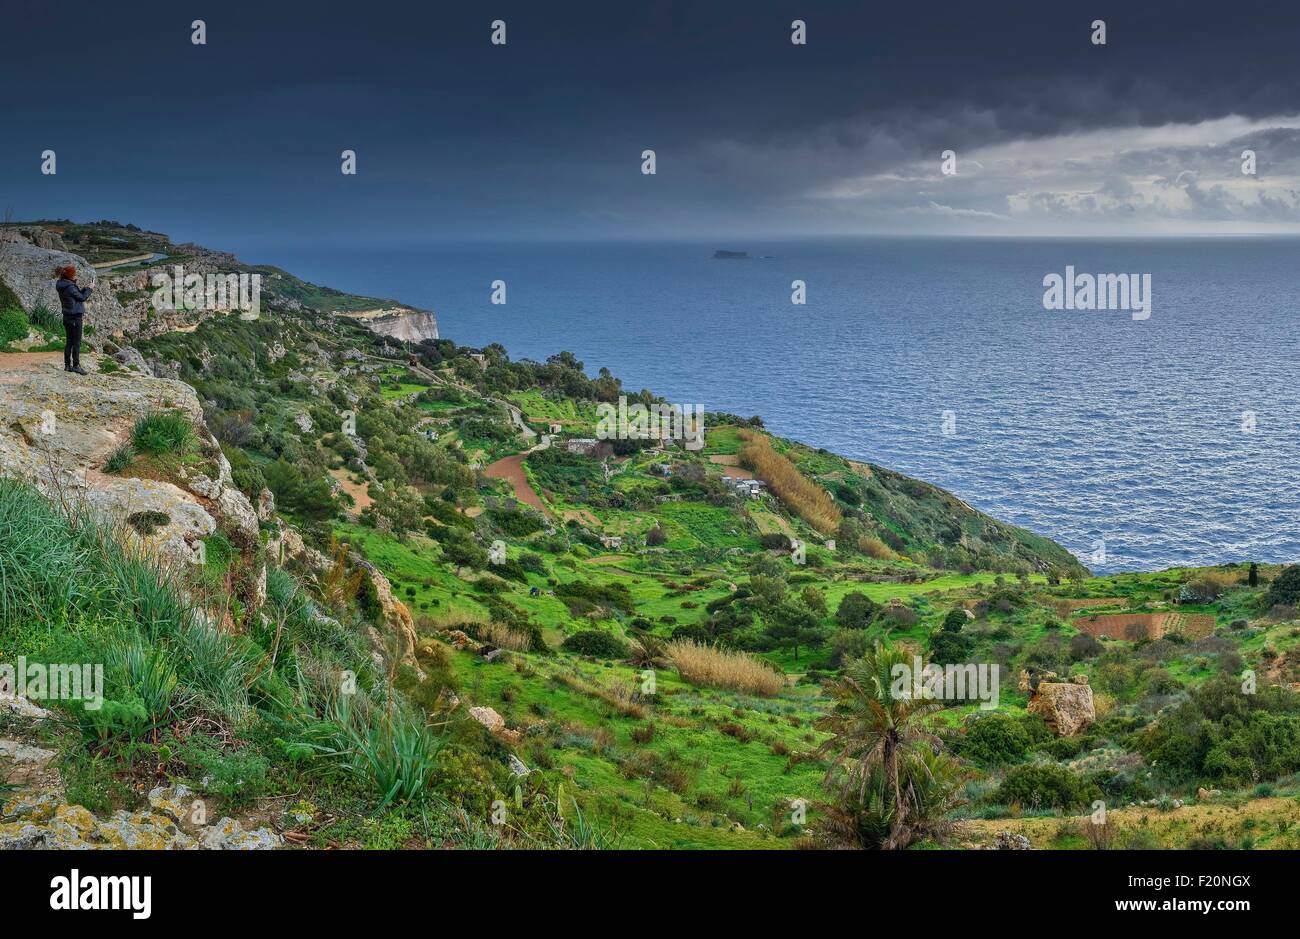 Malta, Dingli, Dingli Cliffs, paesaggio balneare di scogliere e terrazze raccolti agricoli sotto un cielo tempestoso Foto Stock